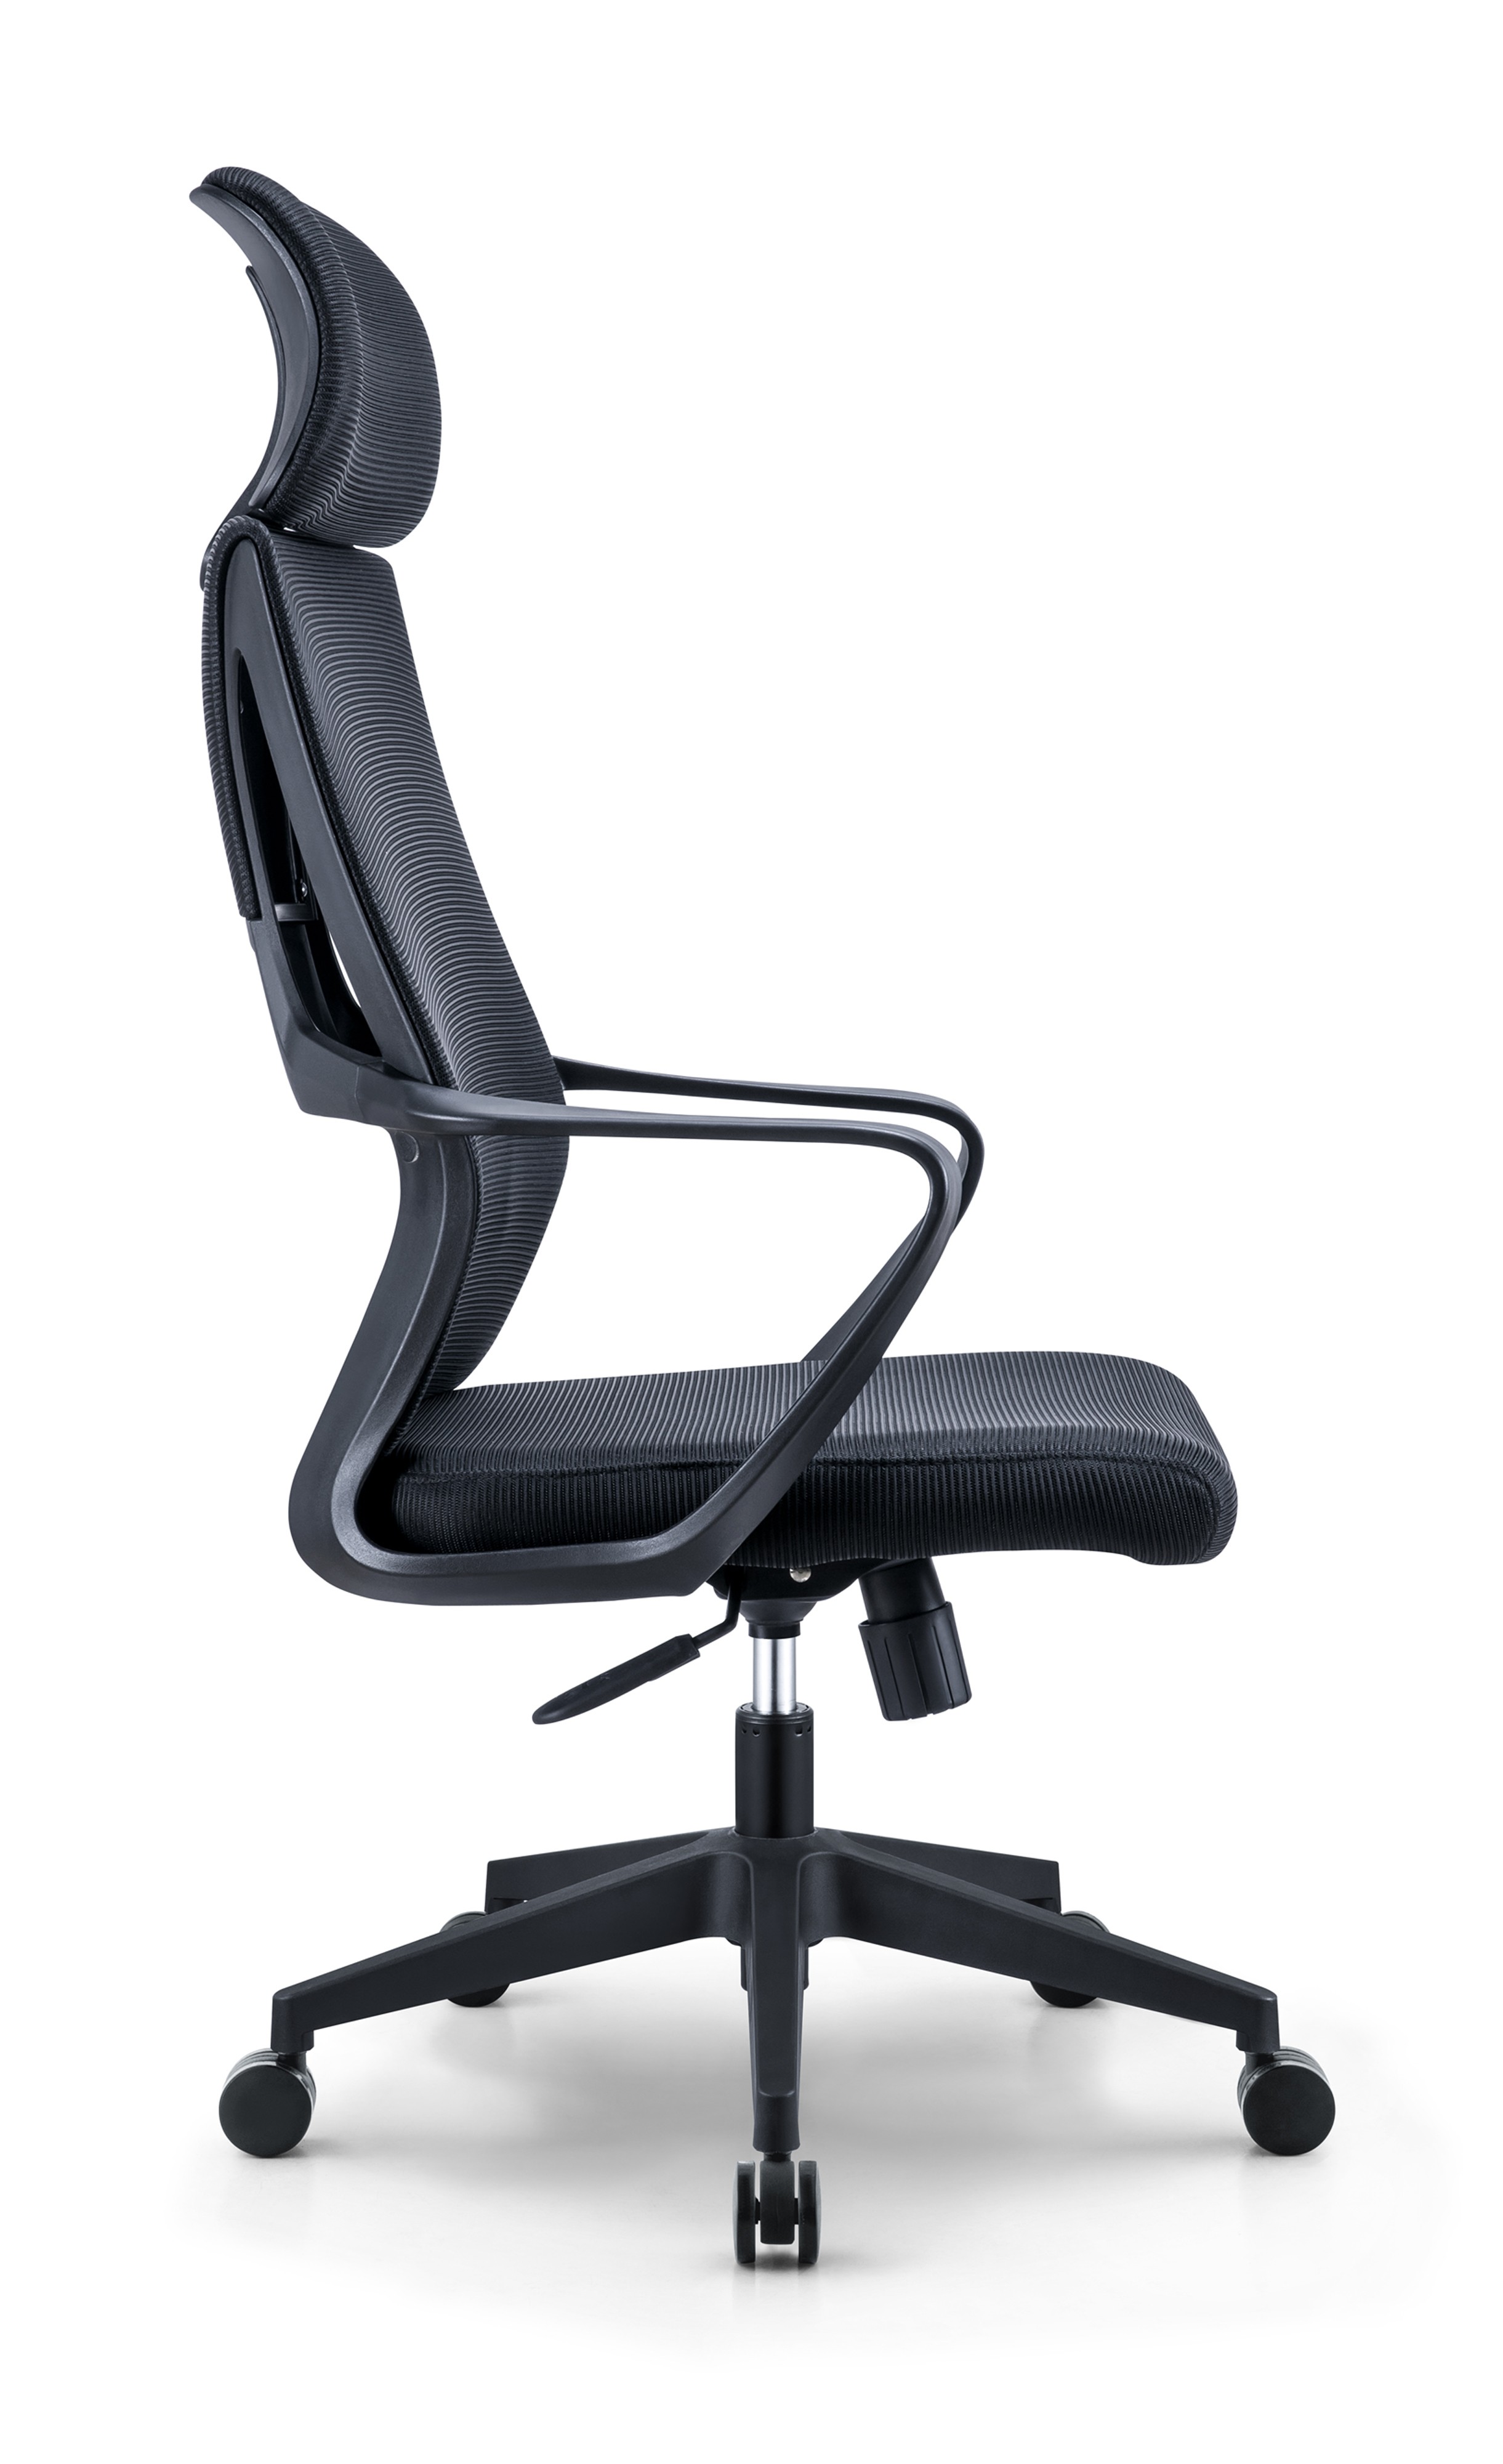 Newcity 544A Vente chaude moderne chaise en maille à dossier haut meilleur prix chaise en maille appui-tête réglable chaise en maille personnel chaise pivotante fournisseur de mobilier de bureau Foshan Chine